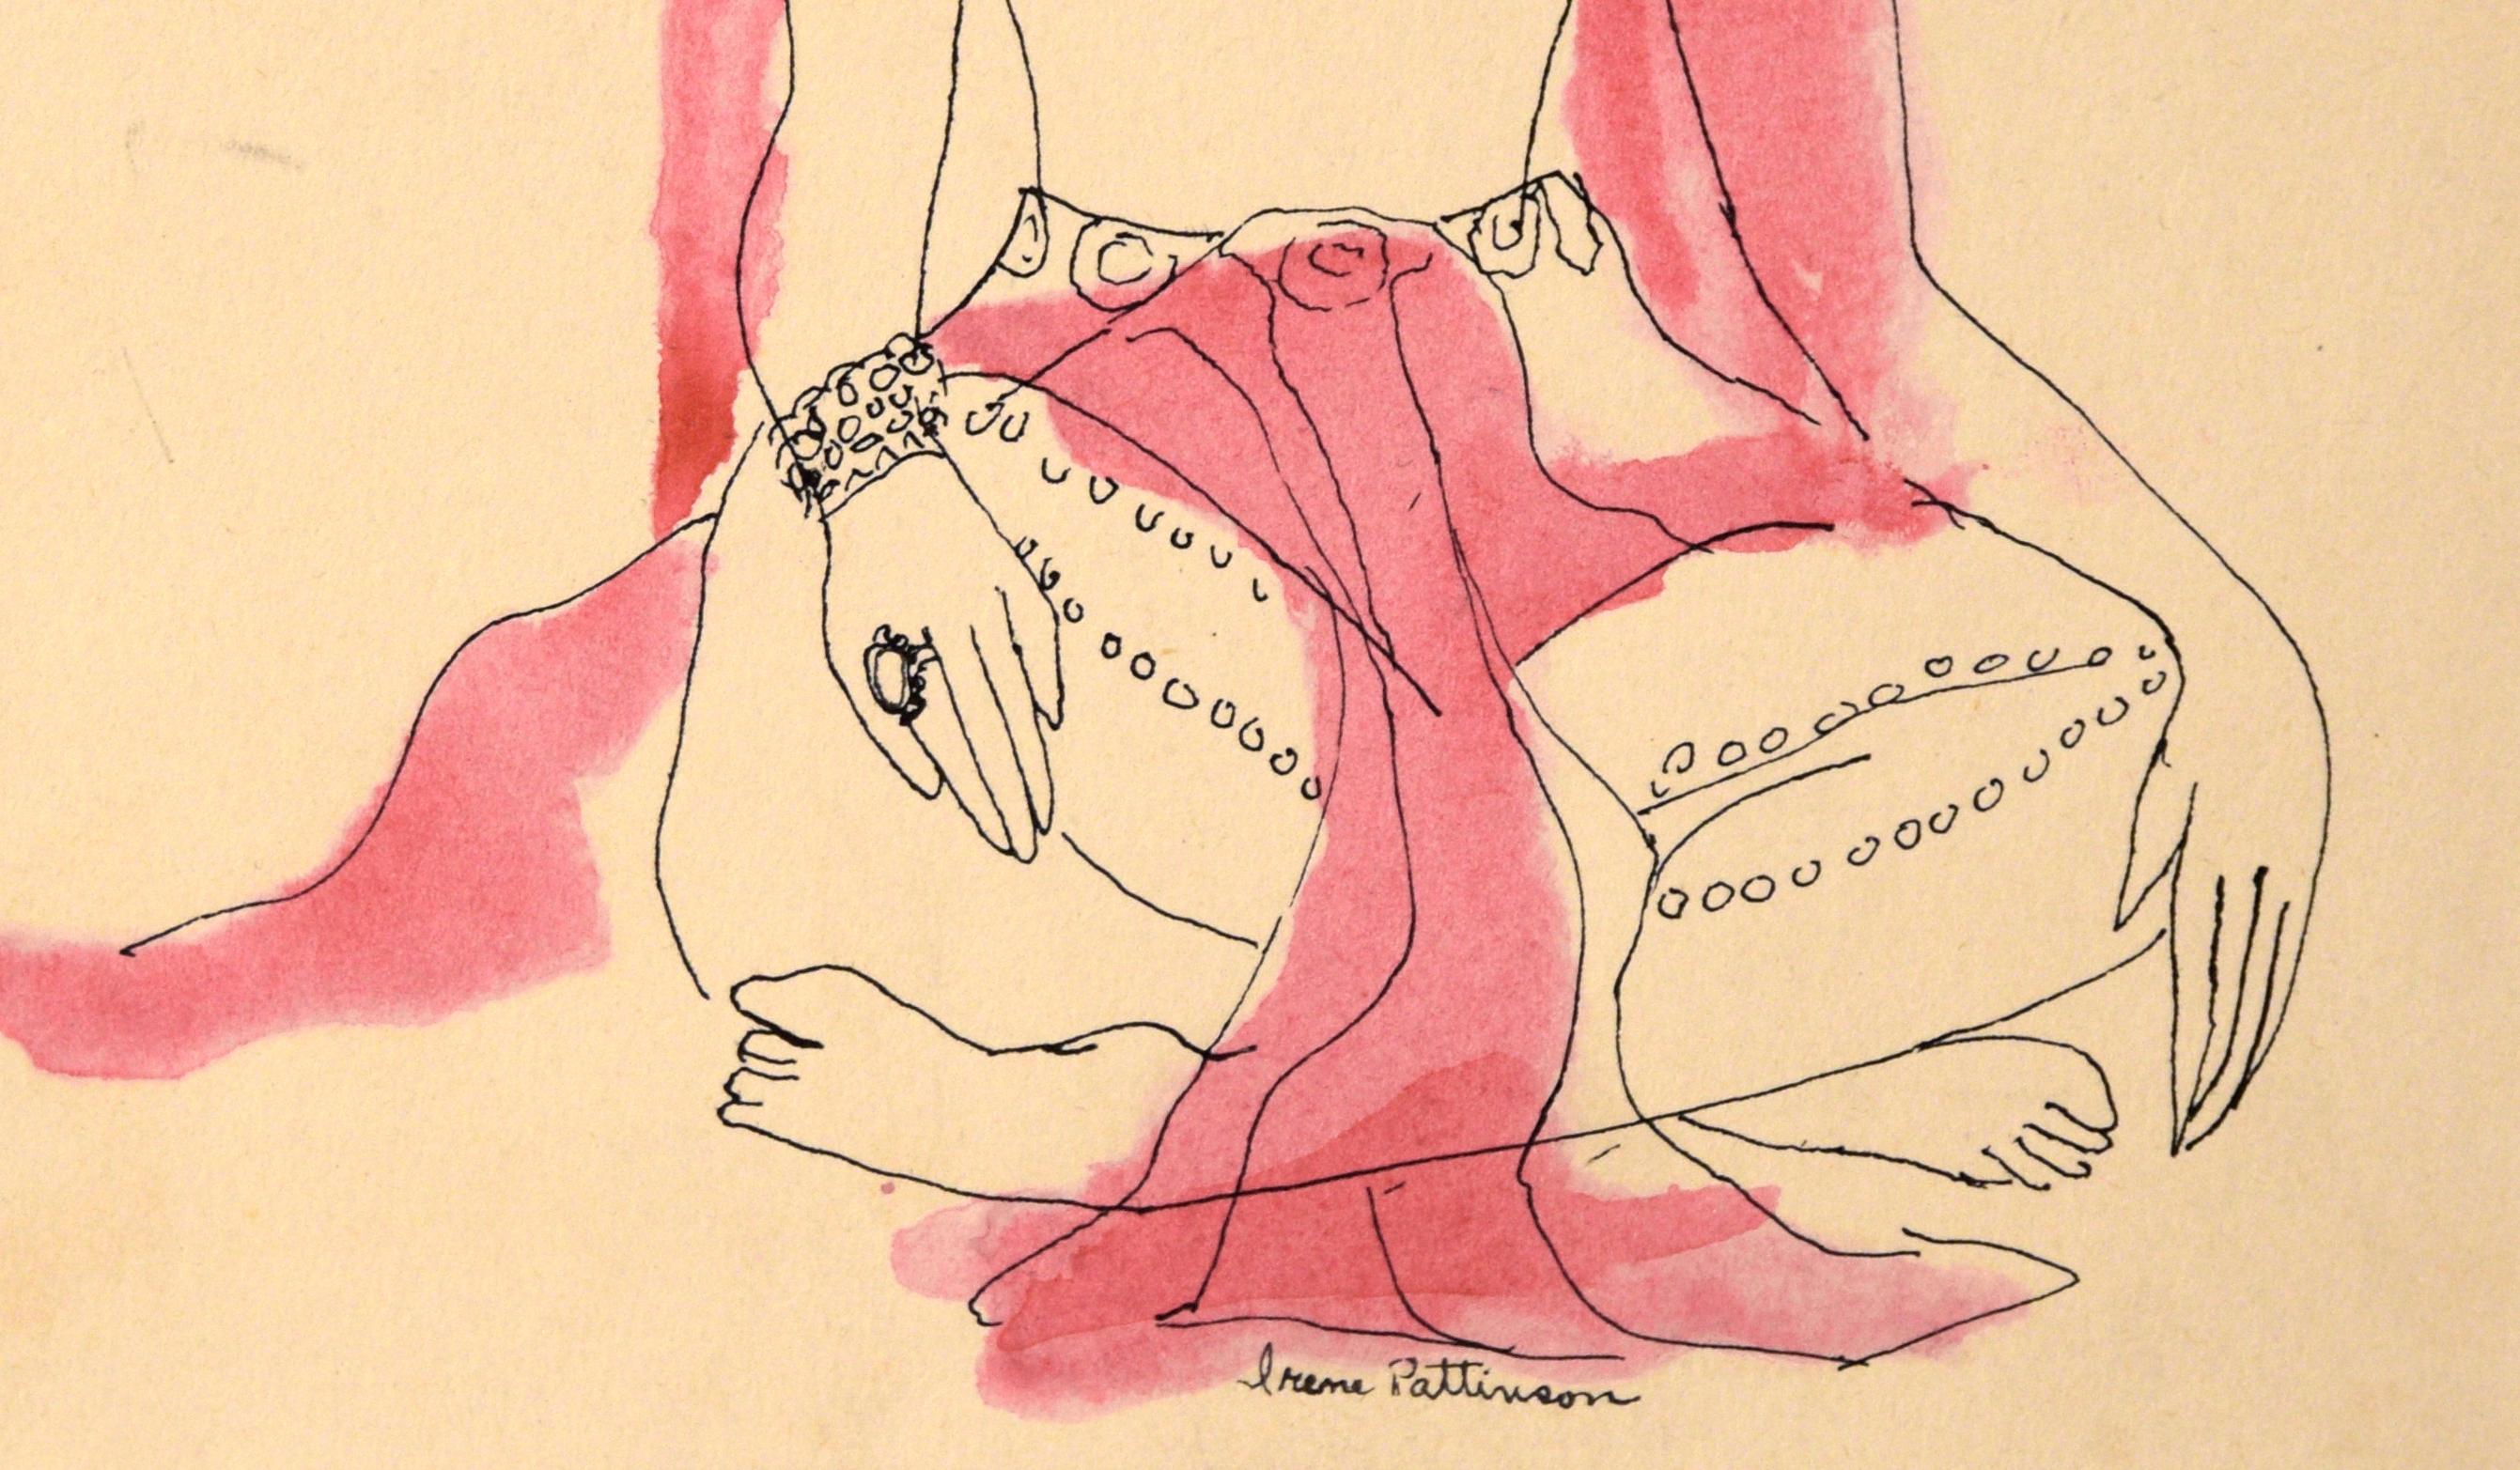 Danseuse indienne - Illustration vintage à l'encre et à l'aquarelle

Dans cette illustration d'Irene Pattinson (américaine, 1909-1999), une femme brune et stoïque, vêtue d'une robe élaborée, est assise les jambes croisées. Pattinson utilise un trait